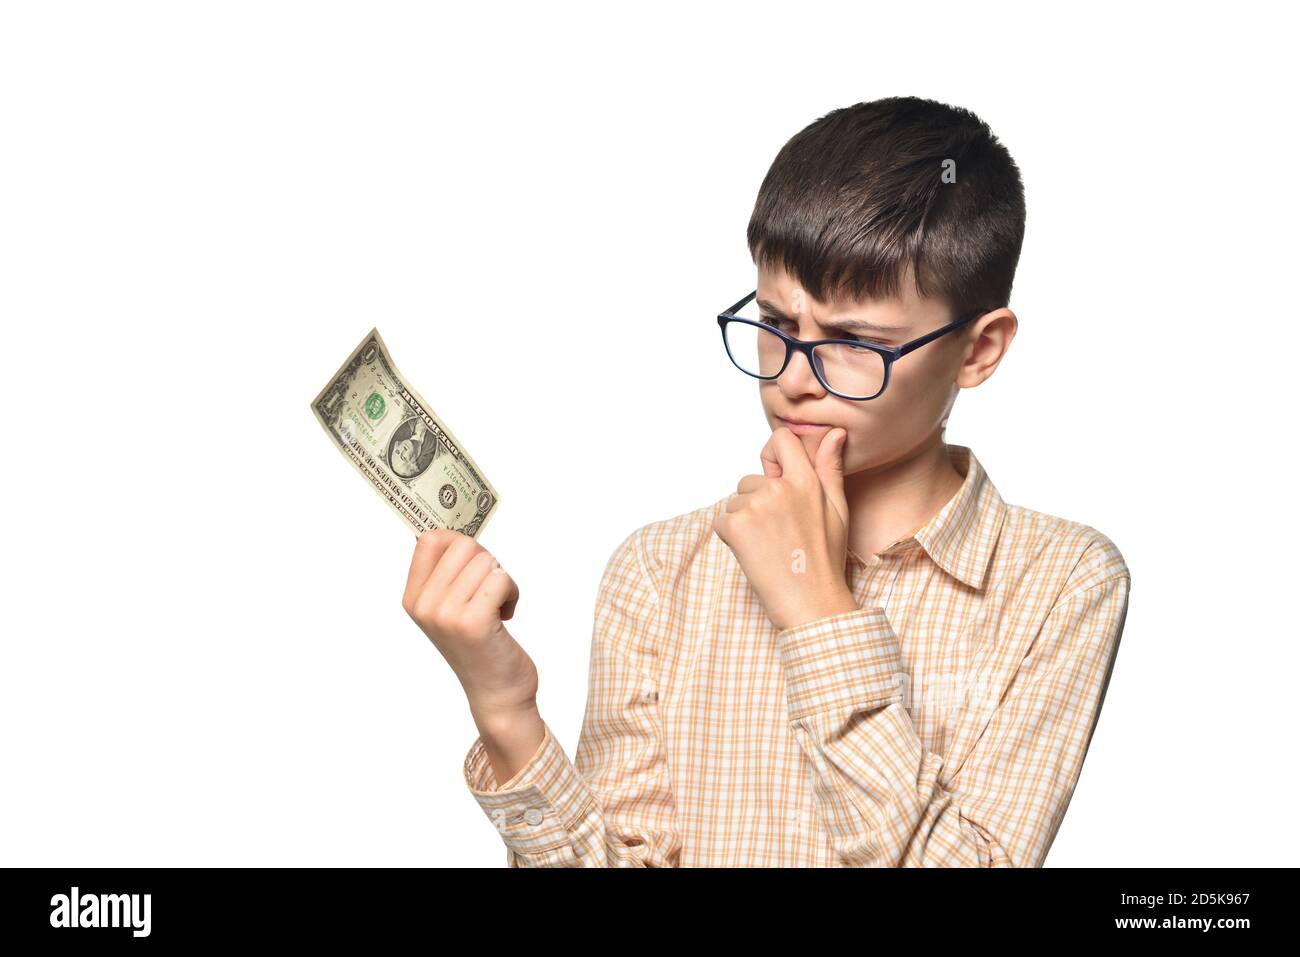 Un jeune garçon tient une facture d'un dollar et pense quoi pour le dépenser Banque D'Images